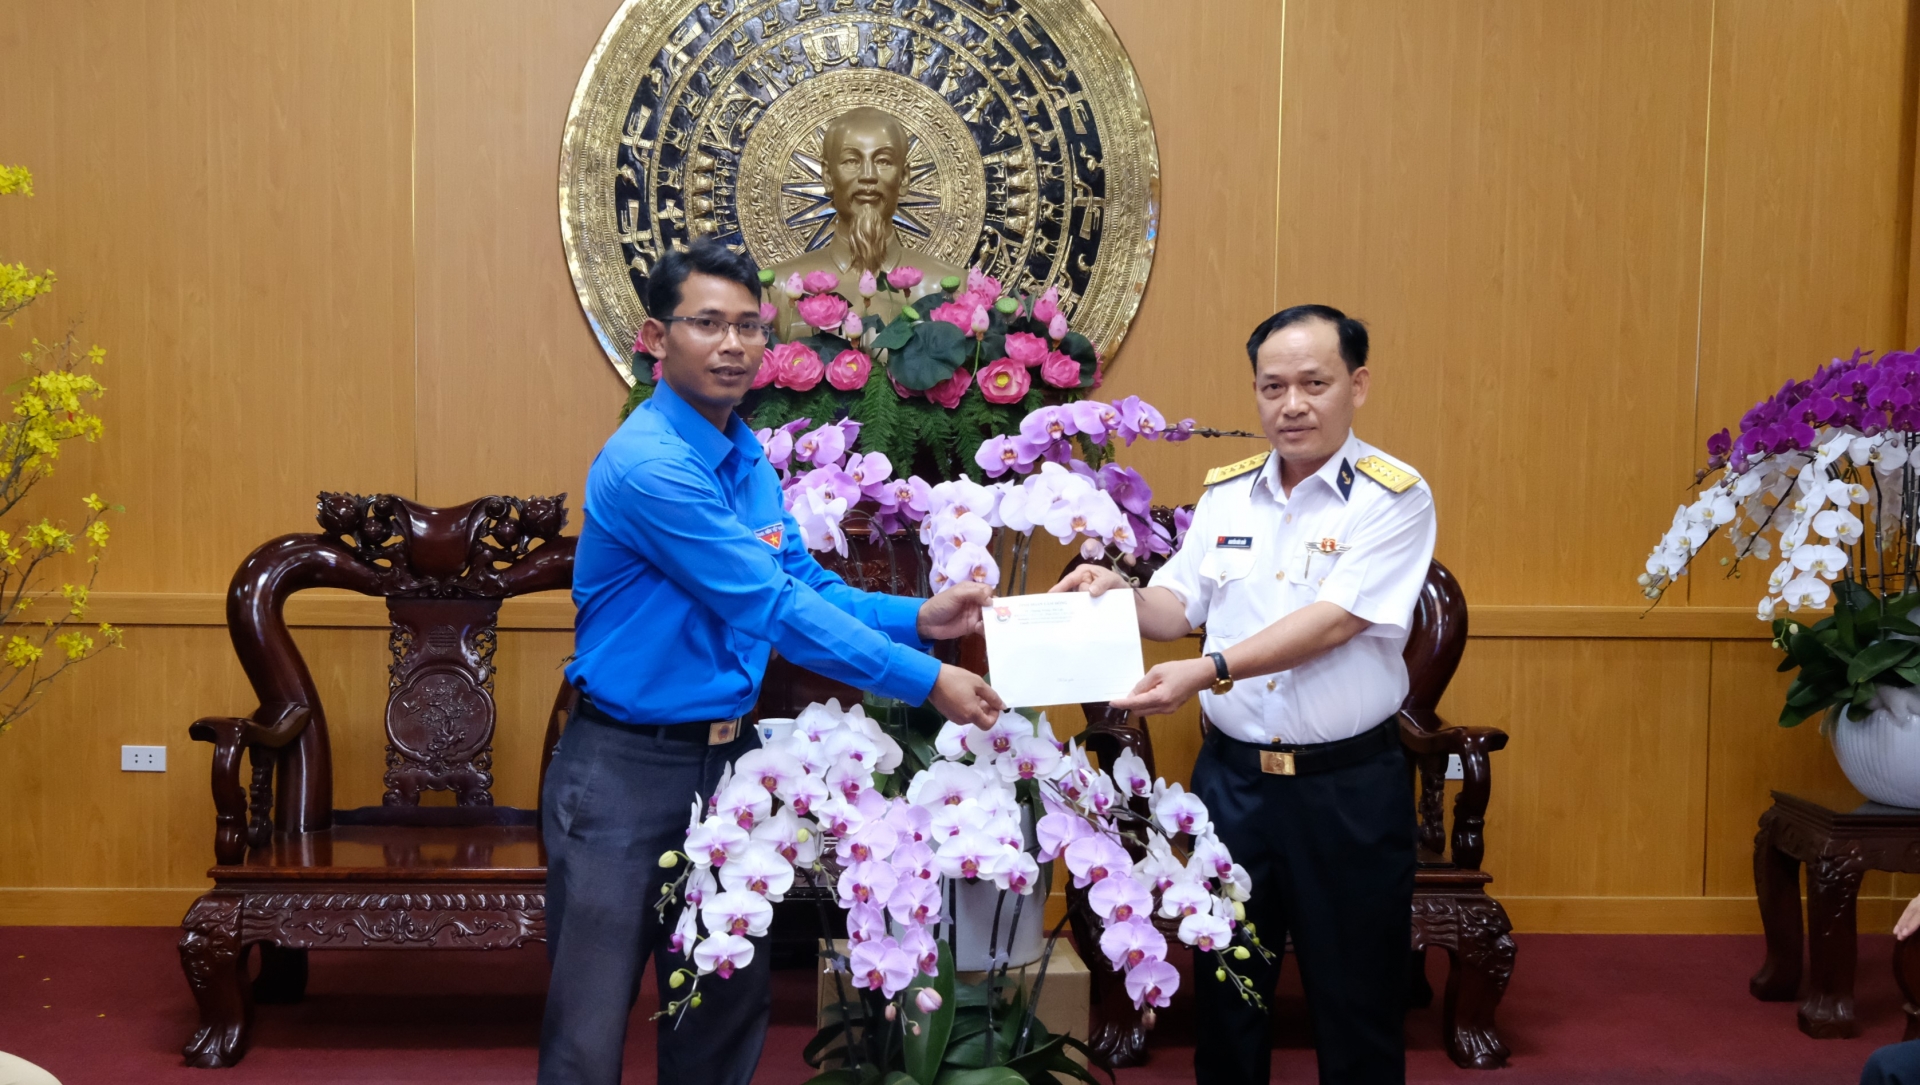 Đồng chí Ndu Ha Biên – Phó Bí thư Tỉnh đoàn tặng hoa và quà đặc sản Lâm Đồng cho Lãnh đạo Bộ Tư lệnh Vùng 4 Hải quân